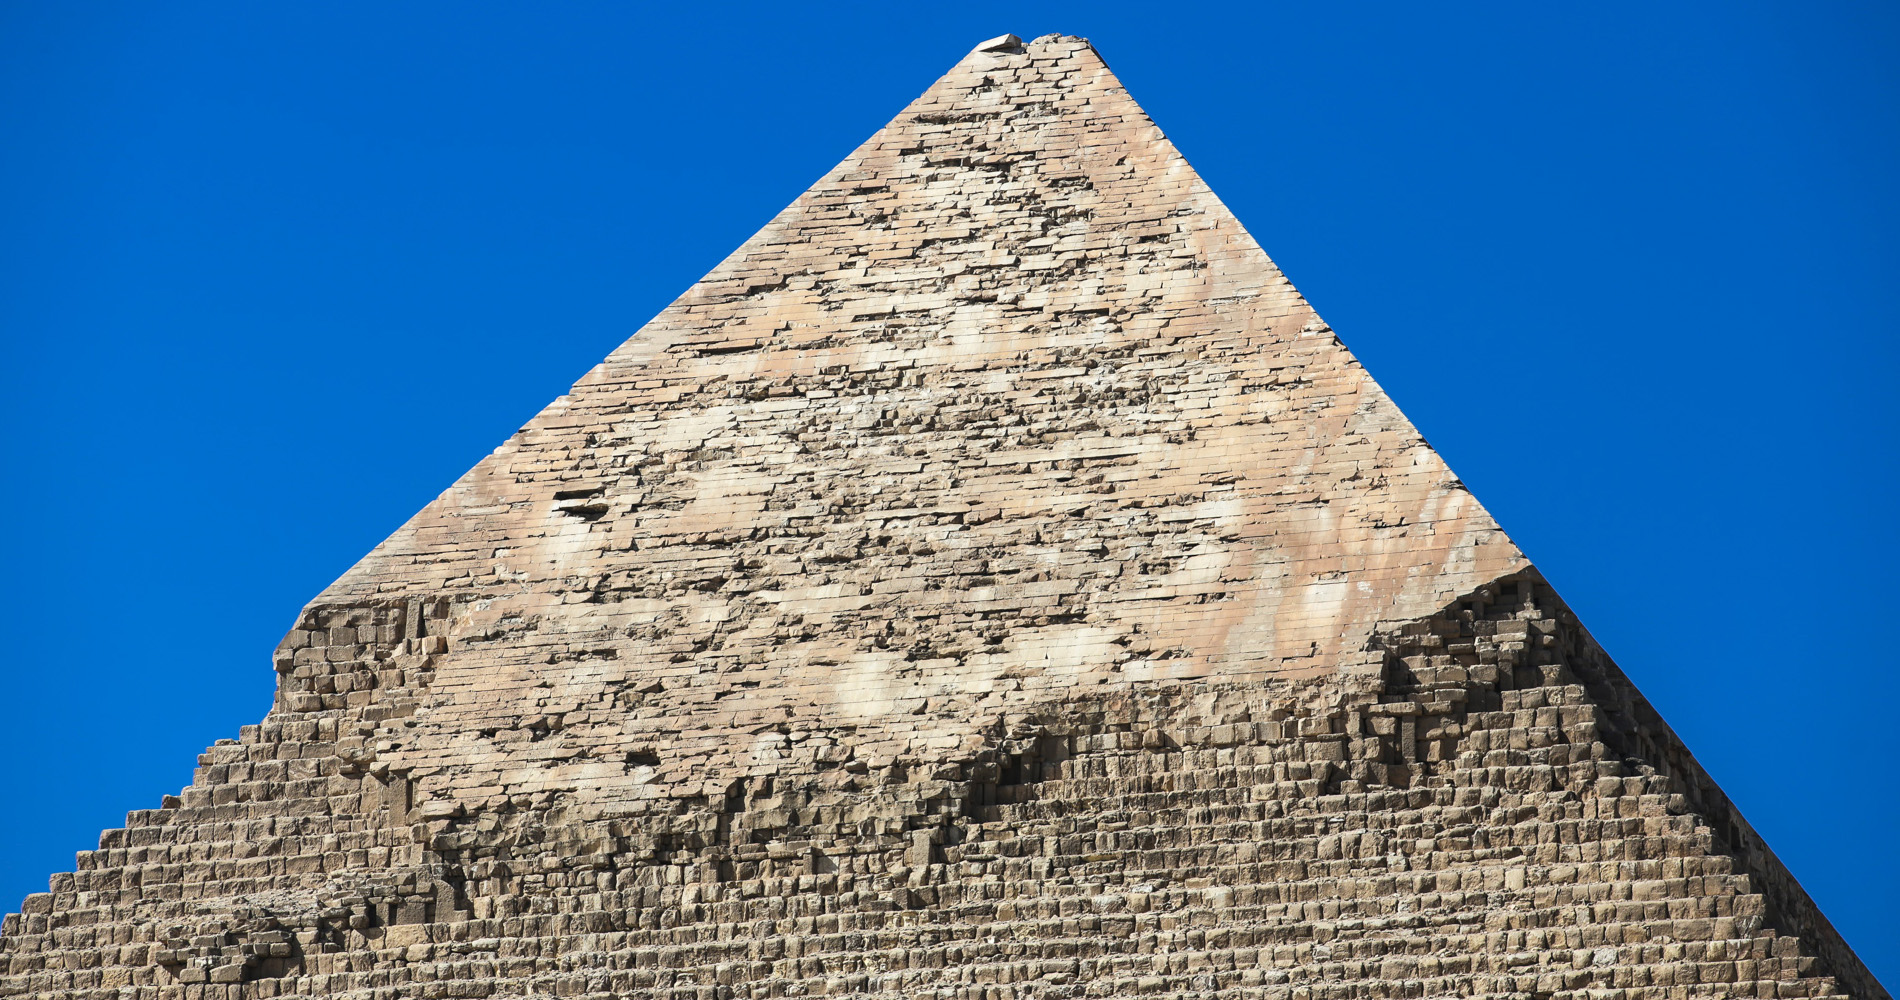 Le haut de la pyramide de Khephren a gardé son parement en calcaire blanc